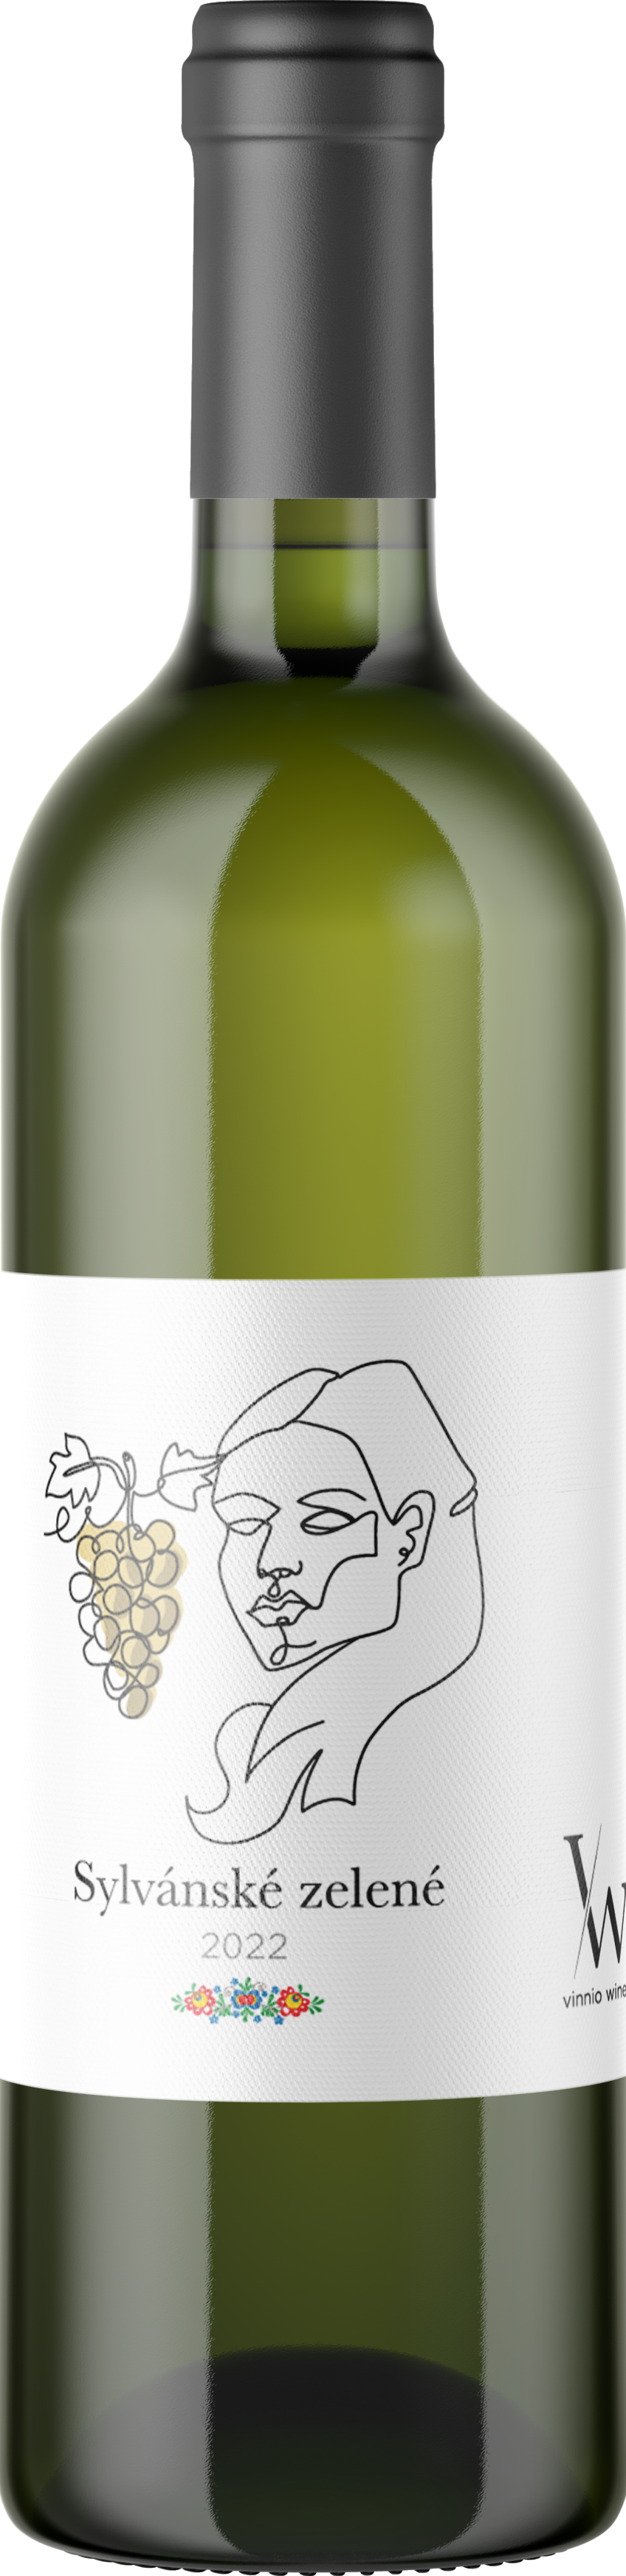 Vinnio Winery - Sylvánské zelené 2022